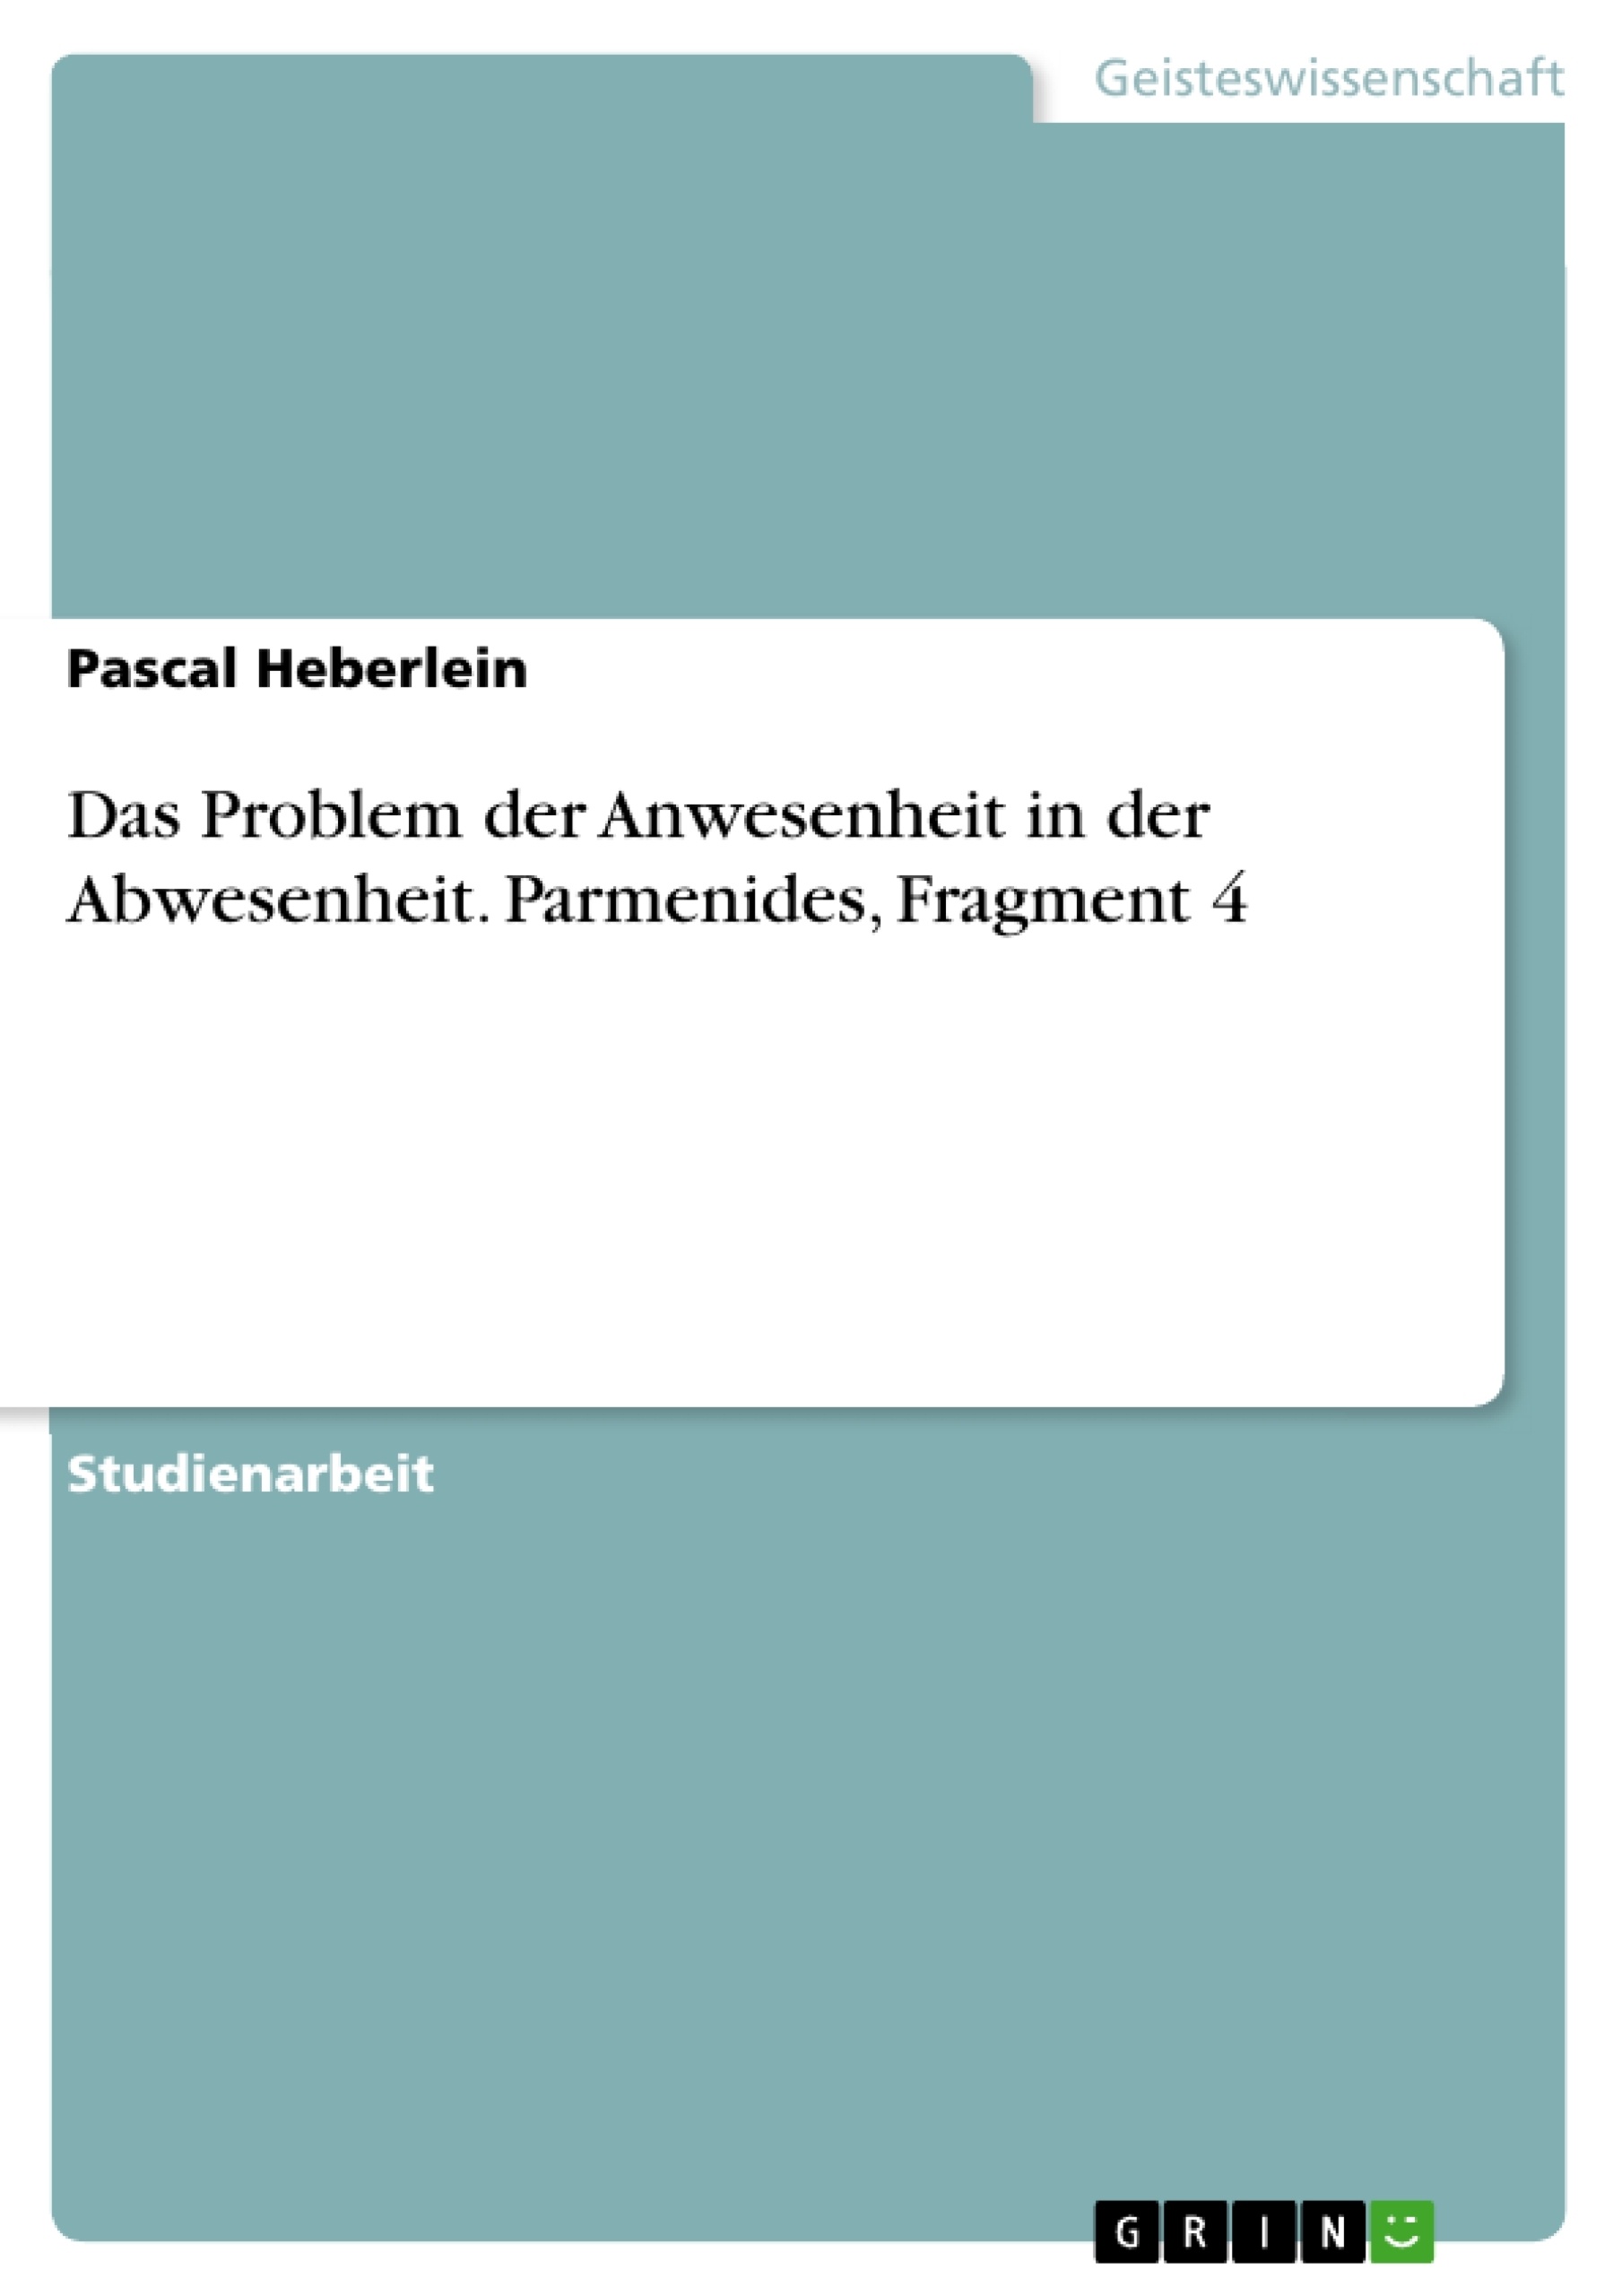 Title: Das Problem der Anwesenheit in der Abwesenheit. Parmenides, Fragment 4